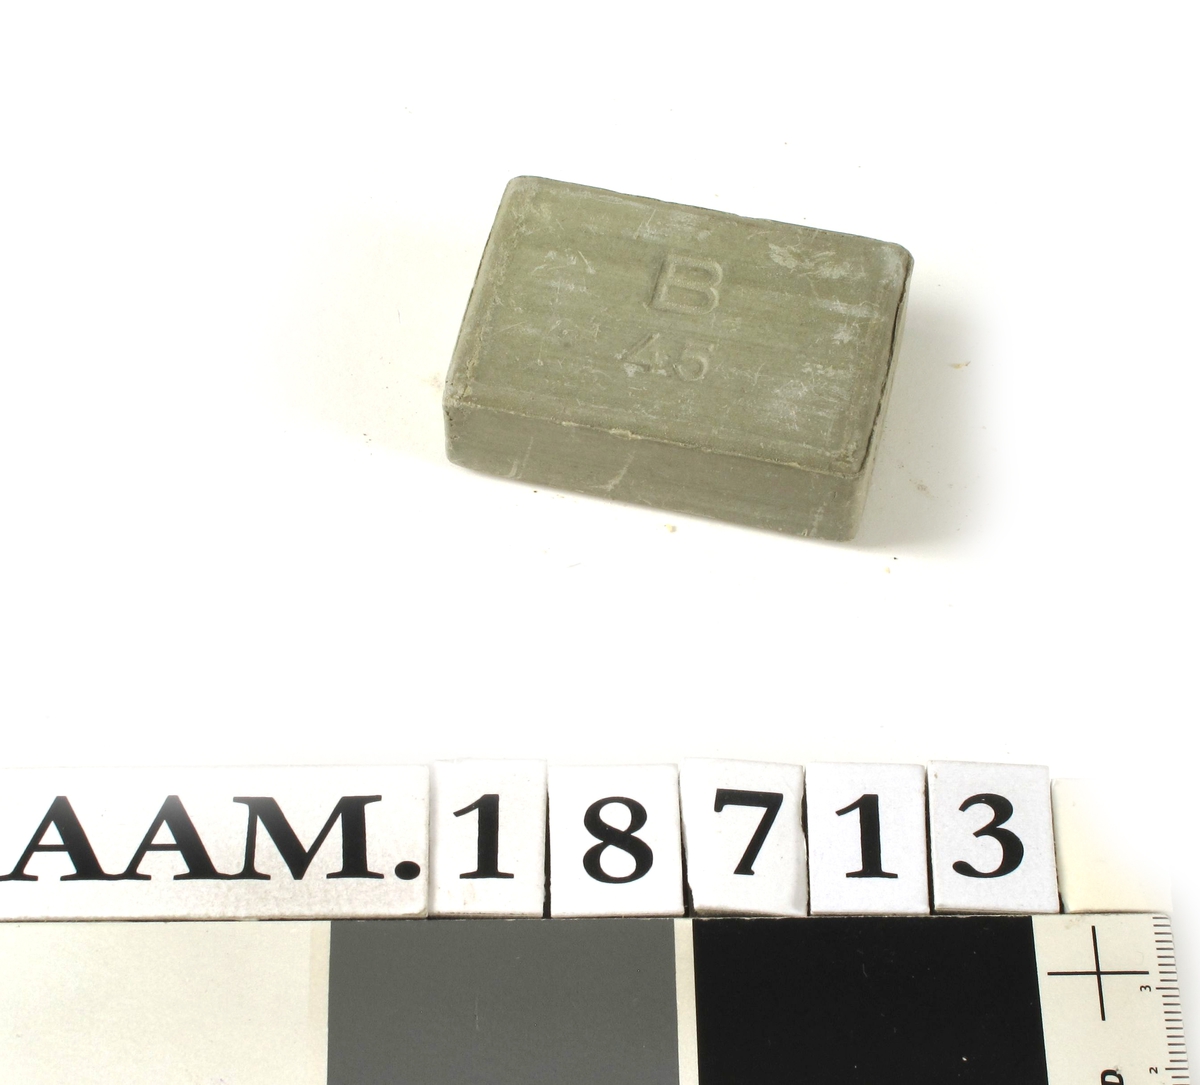 B-såpe,   fra krigen 1940-45 (siste del). 
Grågrønn   finkornet  sepe, merket   B 45.   Rette sider,   rektangulær.  

Tilstand: ubrukt.